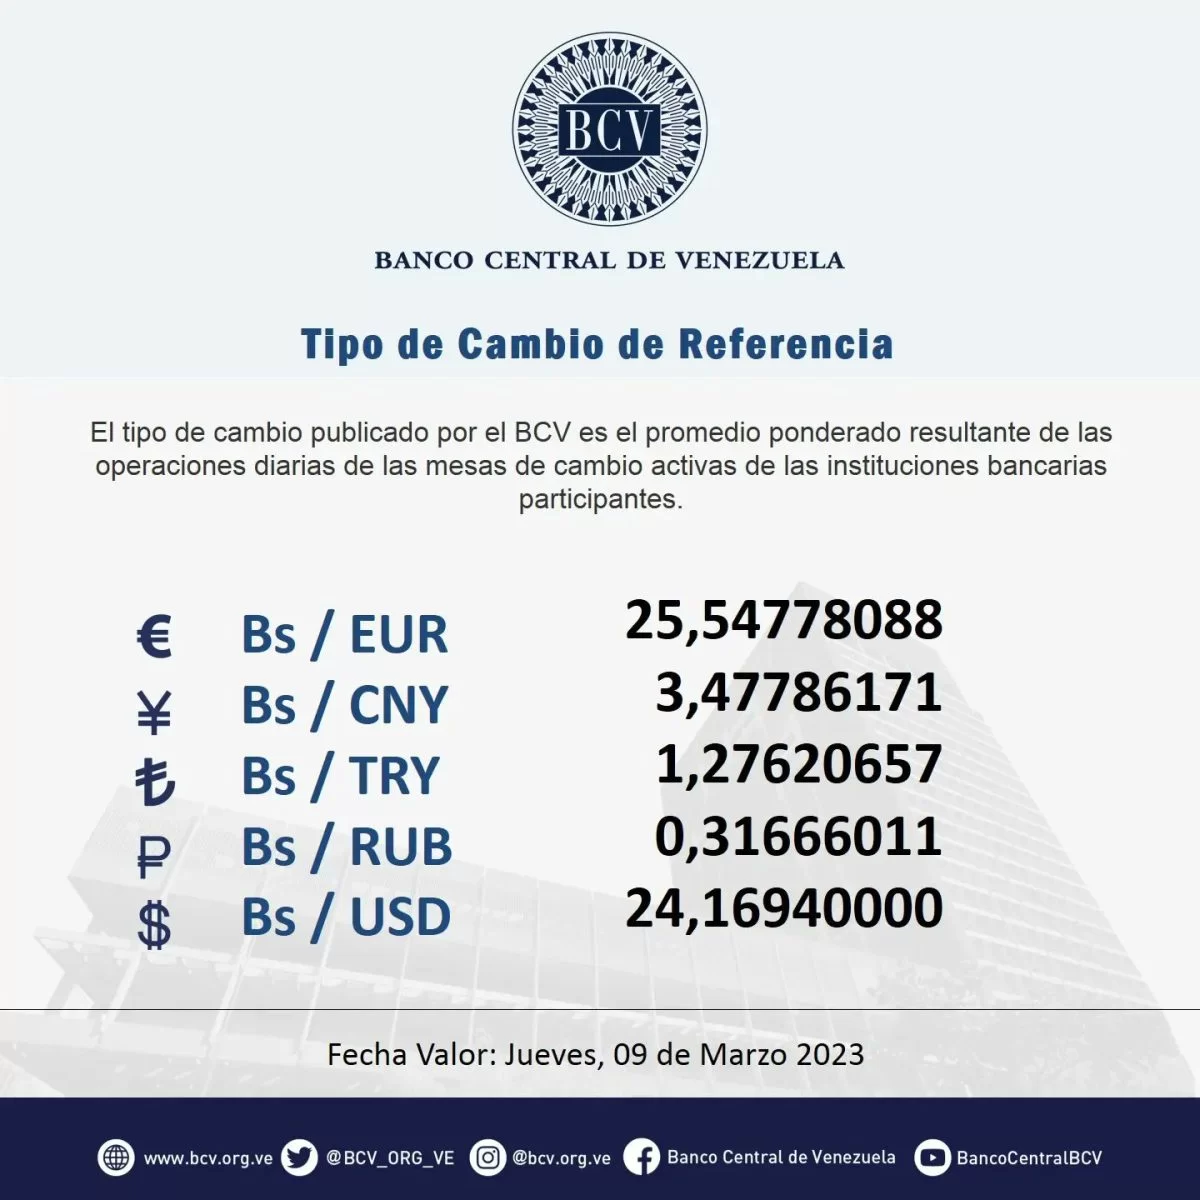 dolartoday en venezuela precio del dolar este miercoles 8 de marzo de 2023 laverdaddemonagas.com bcv5555